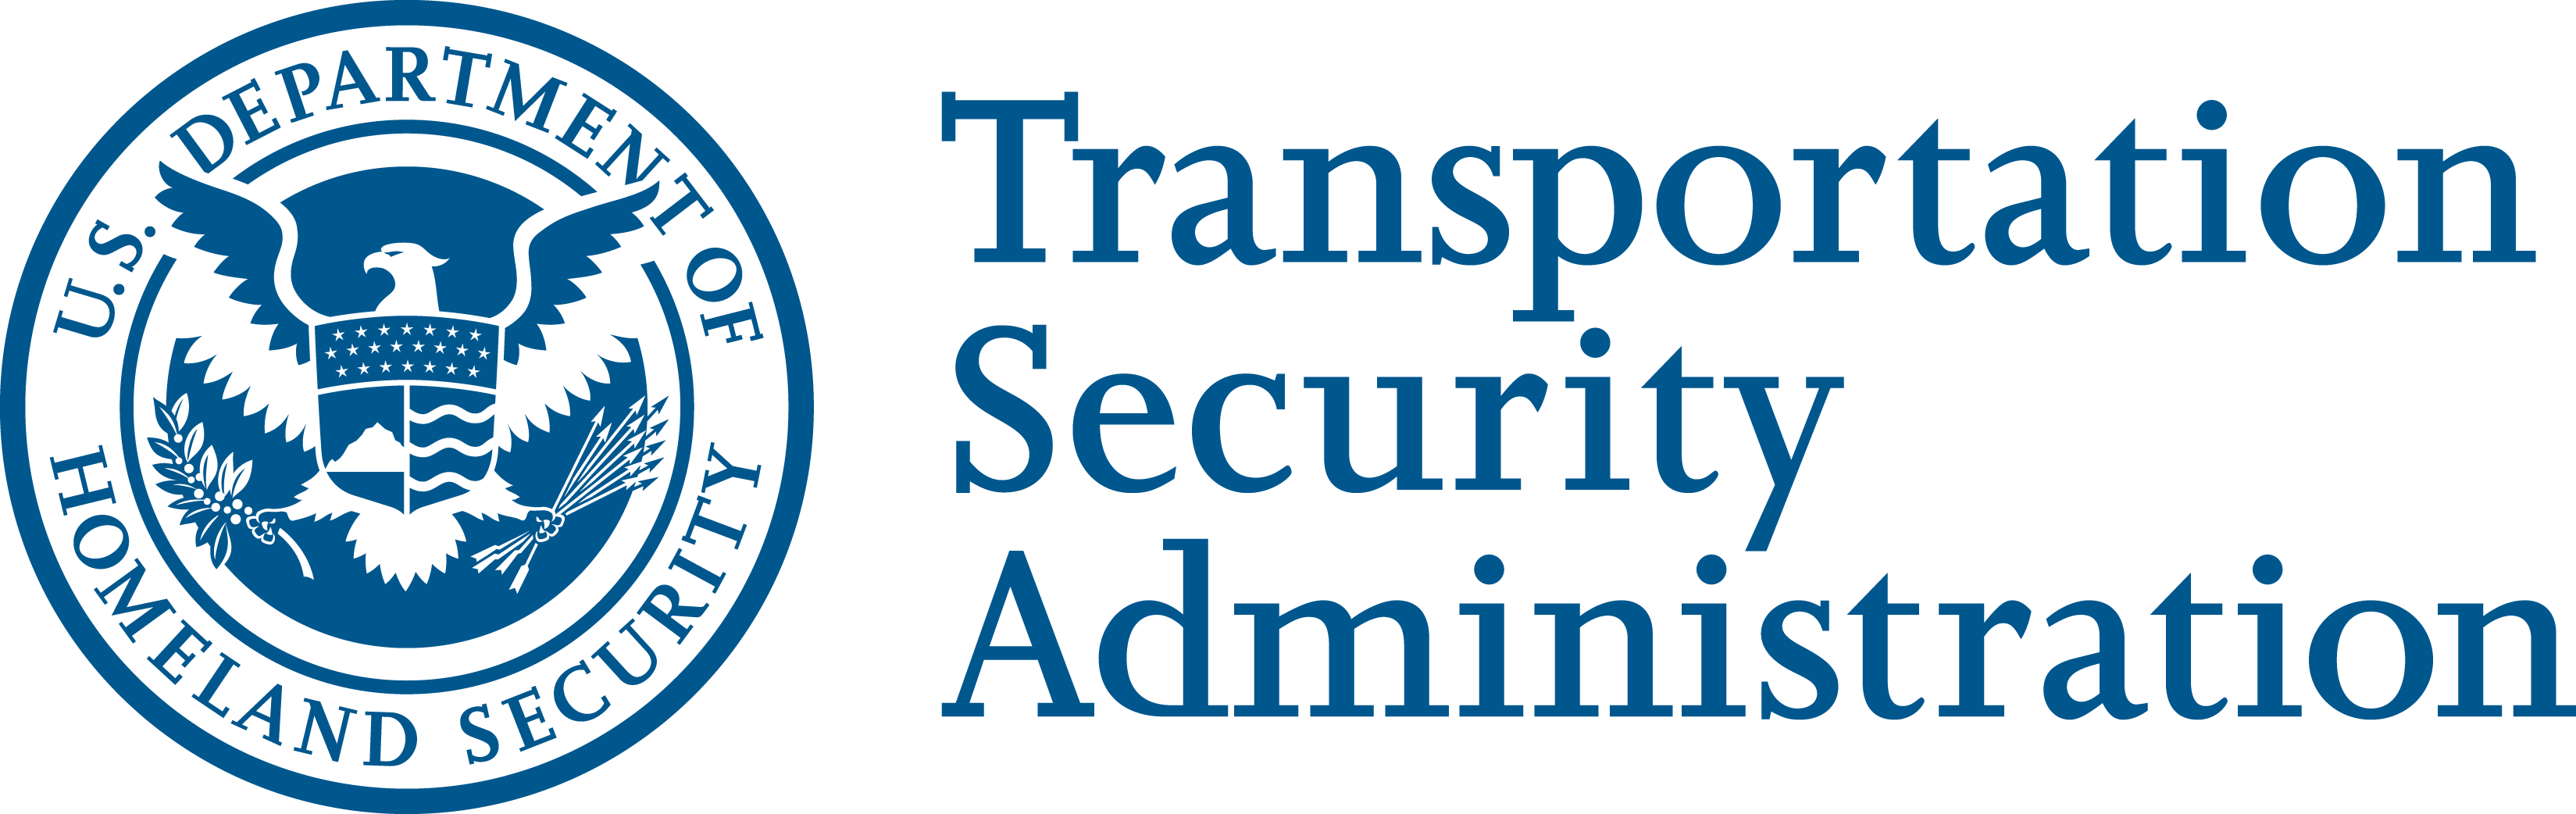 TSA Logo - Transportation Security Administration (TSA)